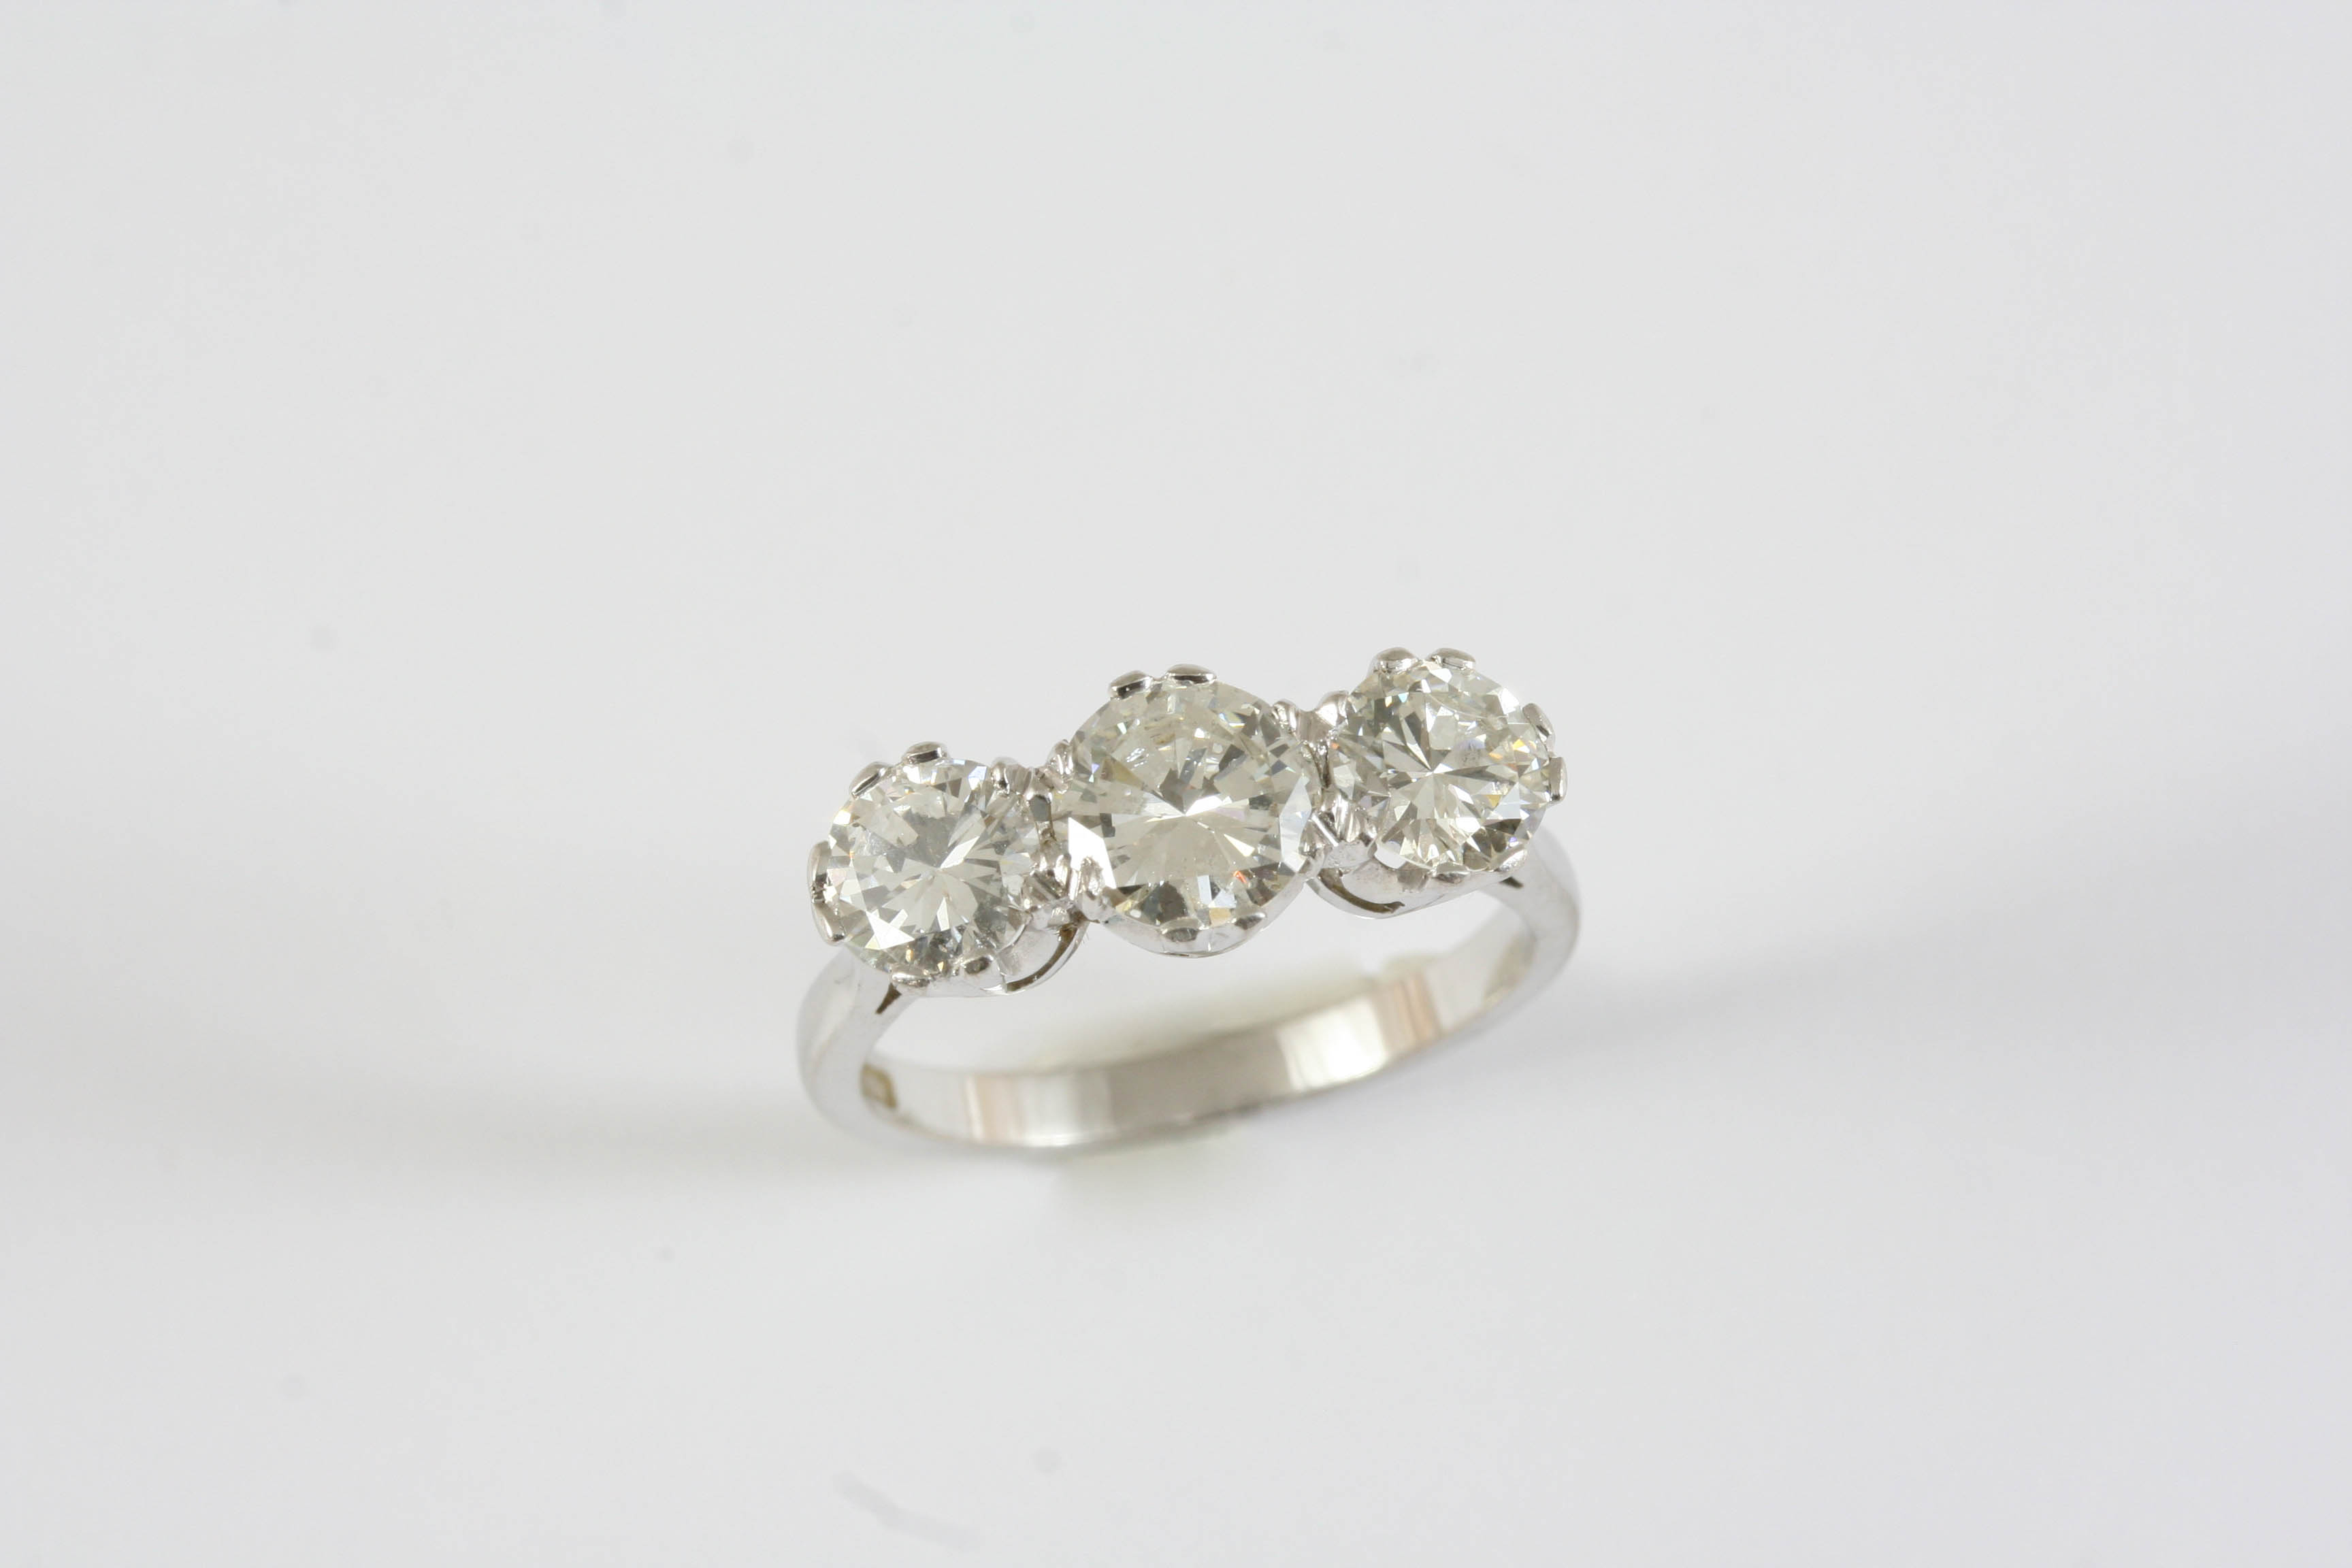 A DIAMOND THREE STONE RING the three graduated brilliant-cut diamonds are set in 18ct white gold.